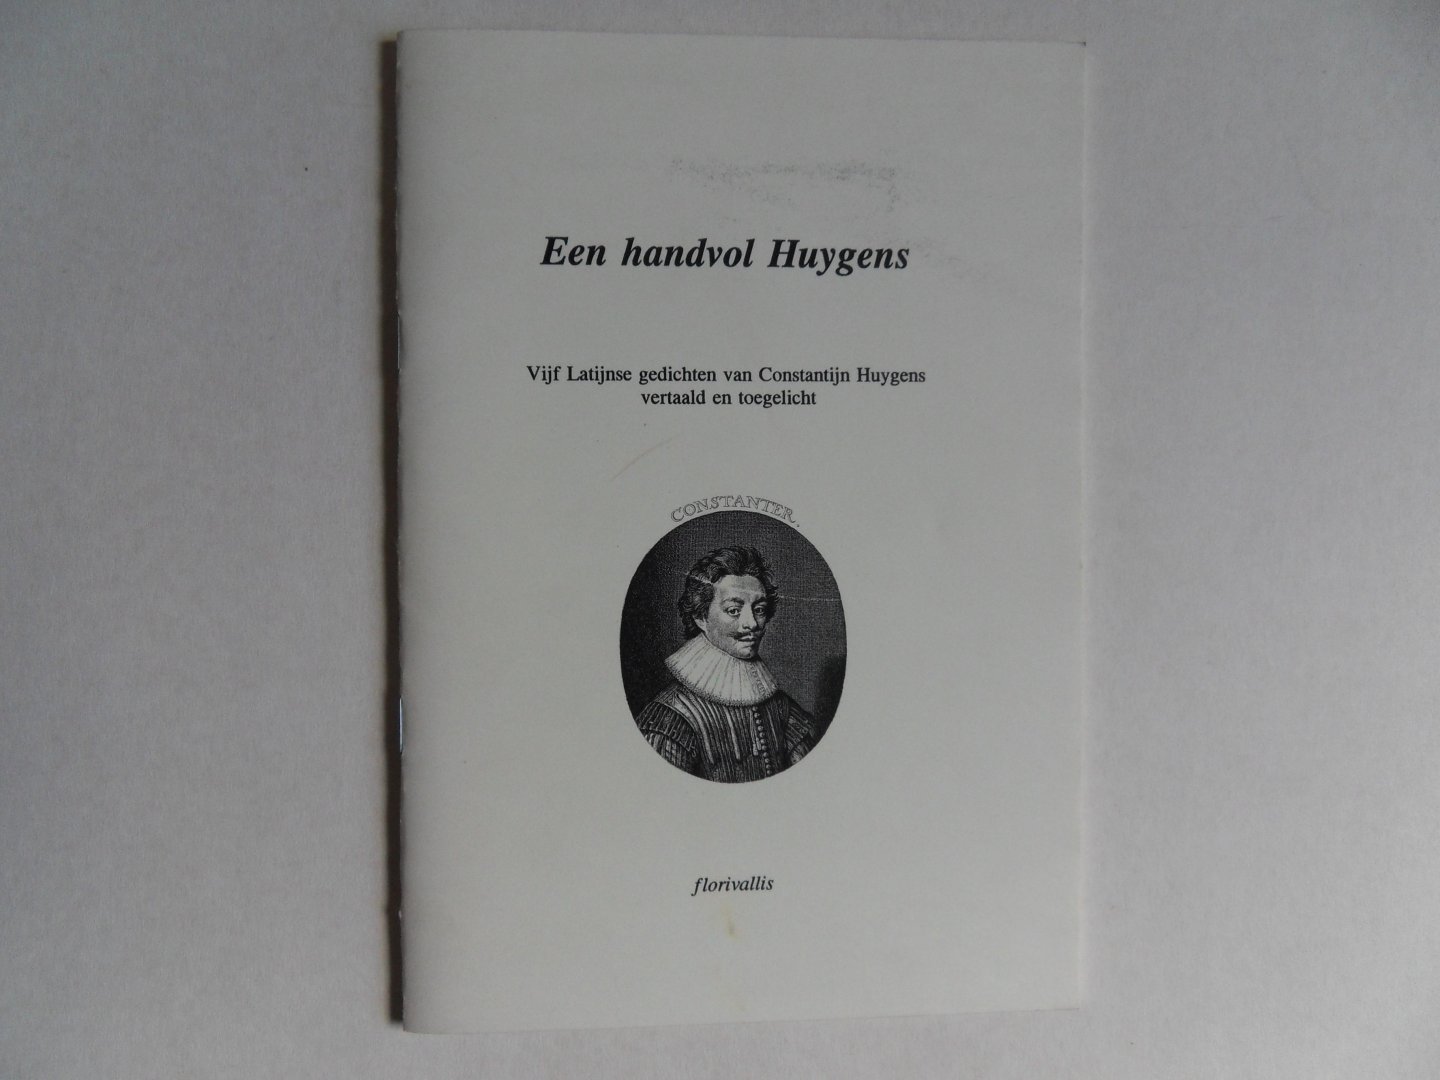 Bloemendal, Jan. - Een handvol Huygens. - Vijf Latijnse gedichten van Constantijn Huygens vertaald en toegelicht.